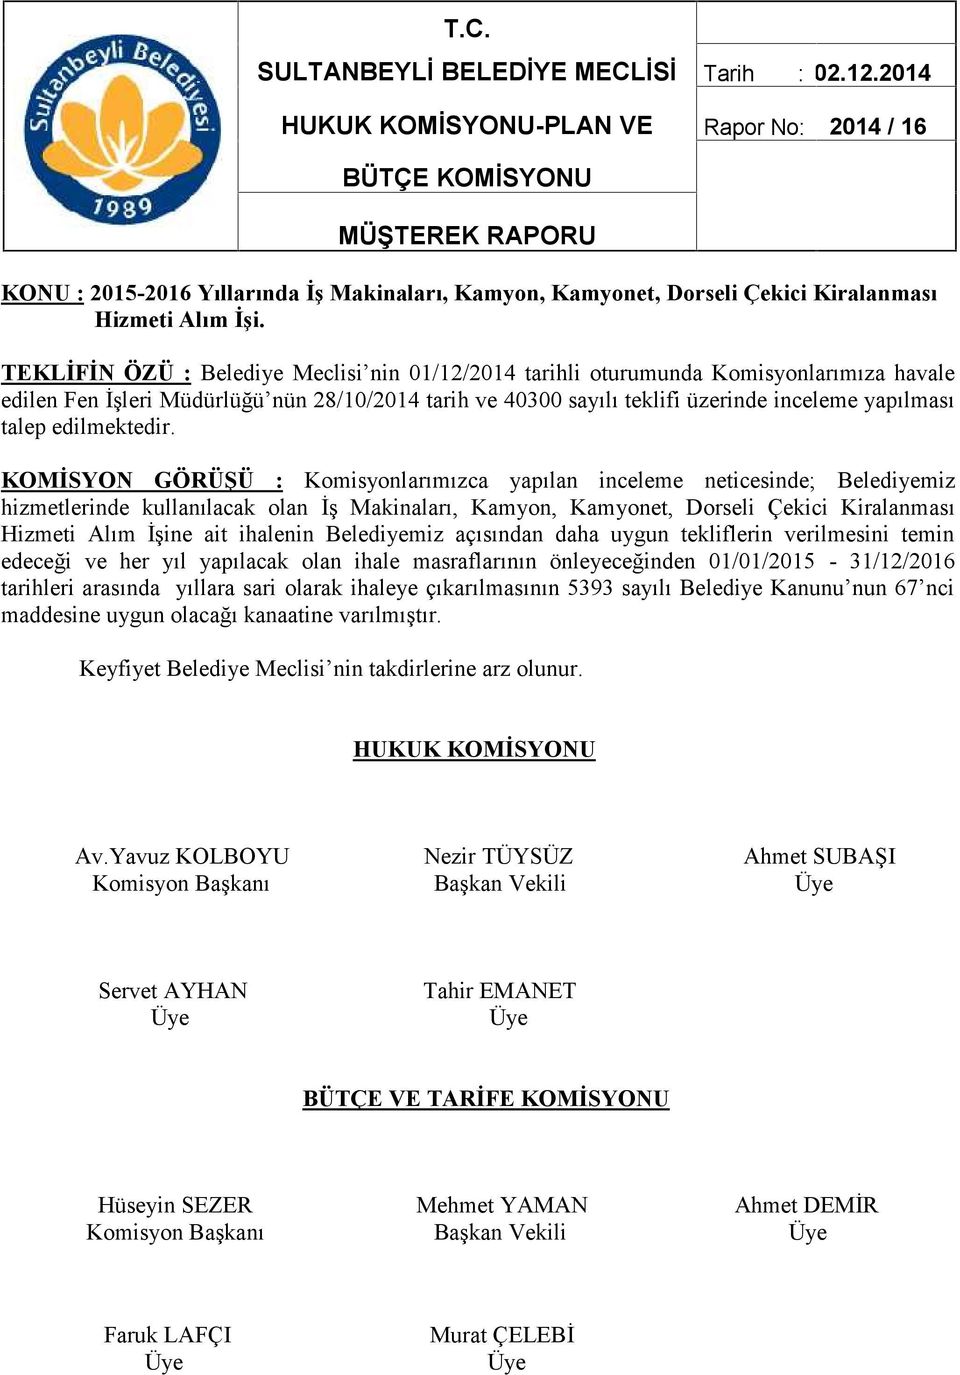 TEKLİFİN ÖZÜ : Belediye Meclisi nin 01/12/2014 tarihli oturumunda Komisyonlarımıza havale edilen Fen İşleri Müdürlüğü nün 28/10/2014 tarih ve 40300 sayılı teklifi üzerinde inceleme yapılması talep